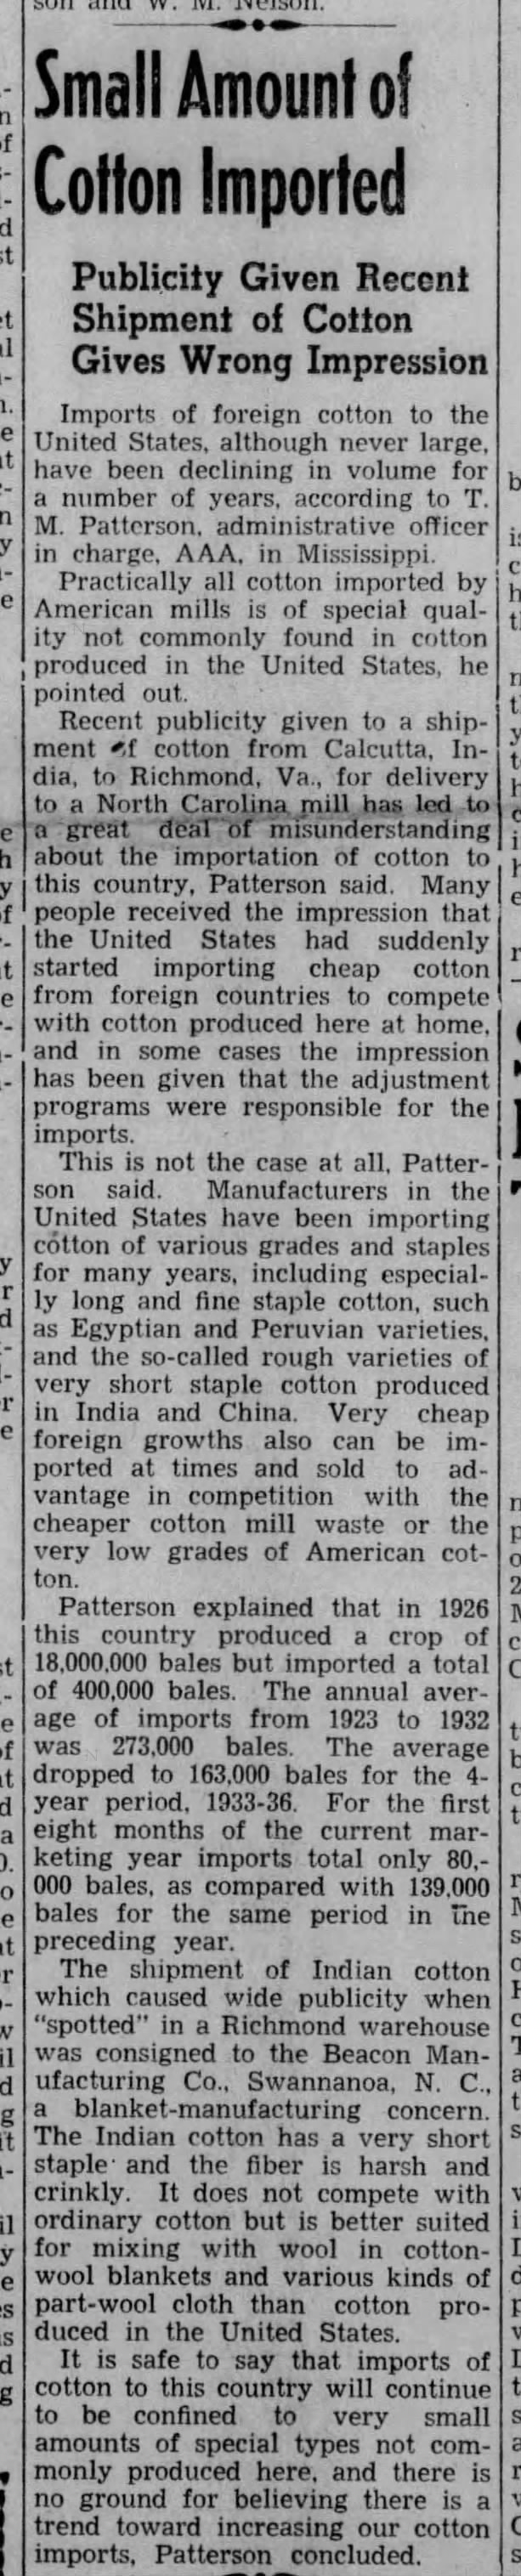 1938_Cotton Imports Beacon